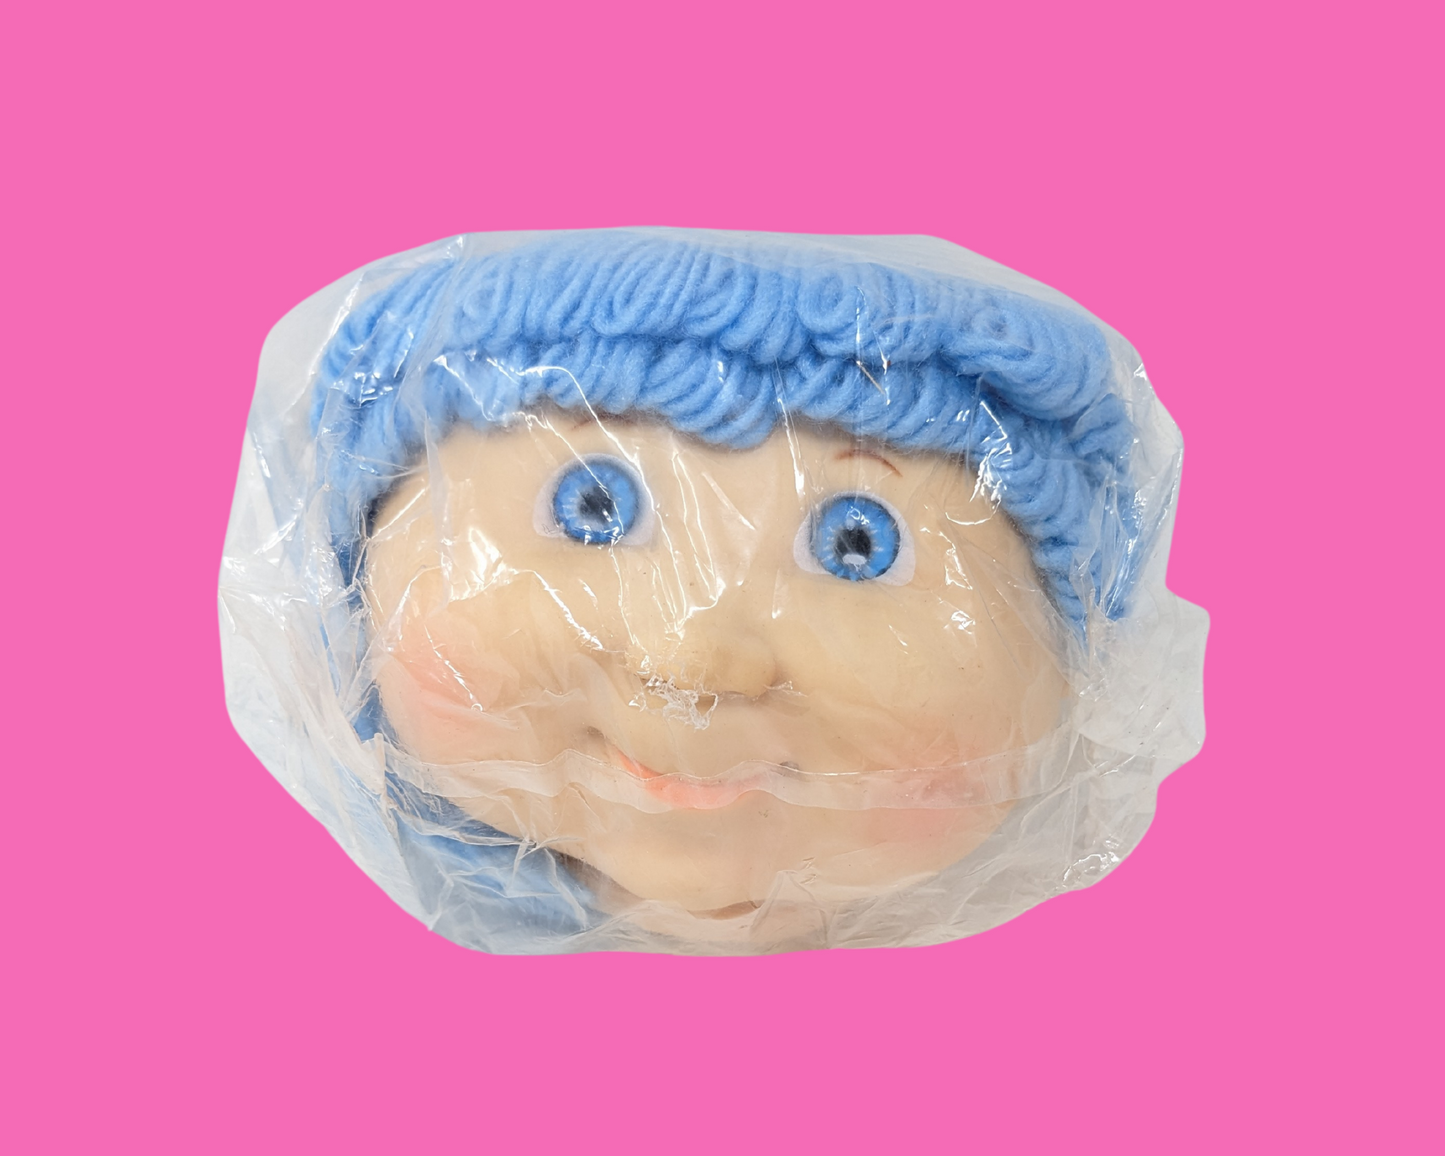 Vintage 1980's Darice Craft Supplies Cabbage Patch Kids Head, Blue Hair